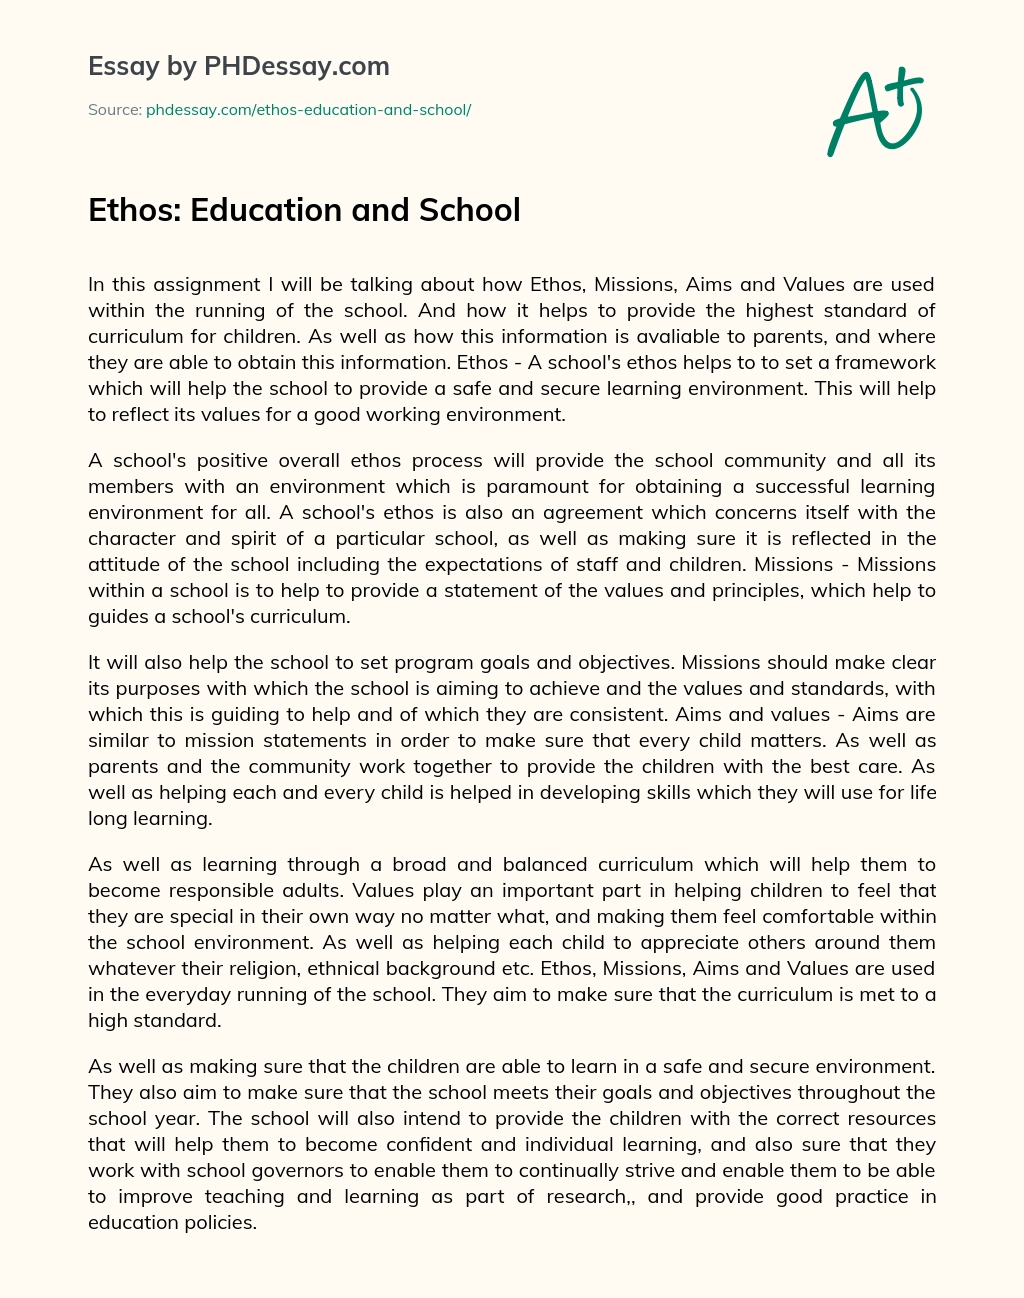 Ethos: Education and School essay